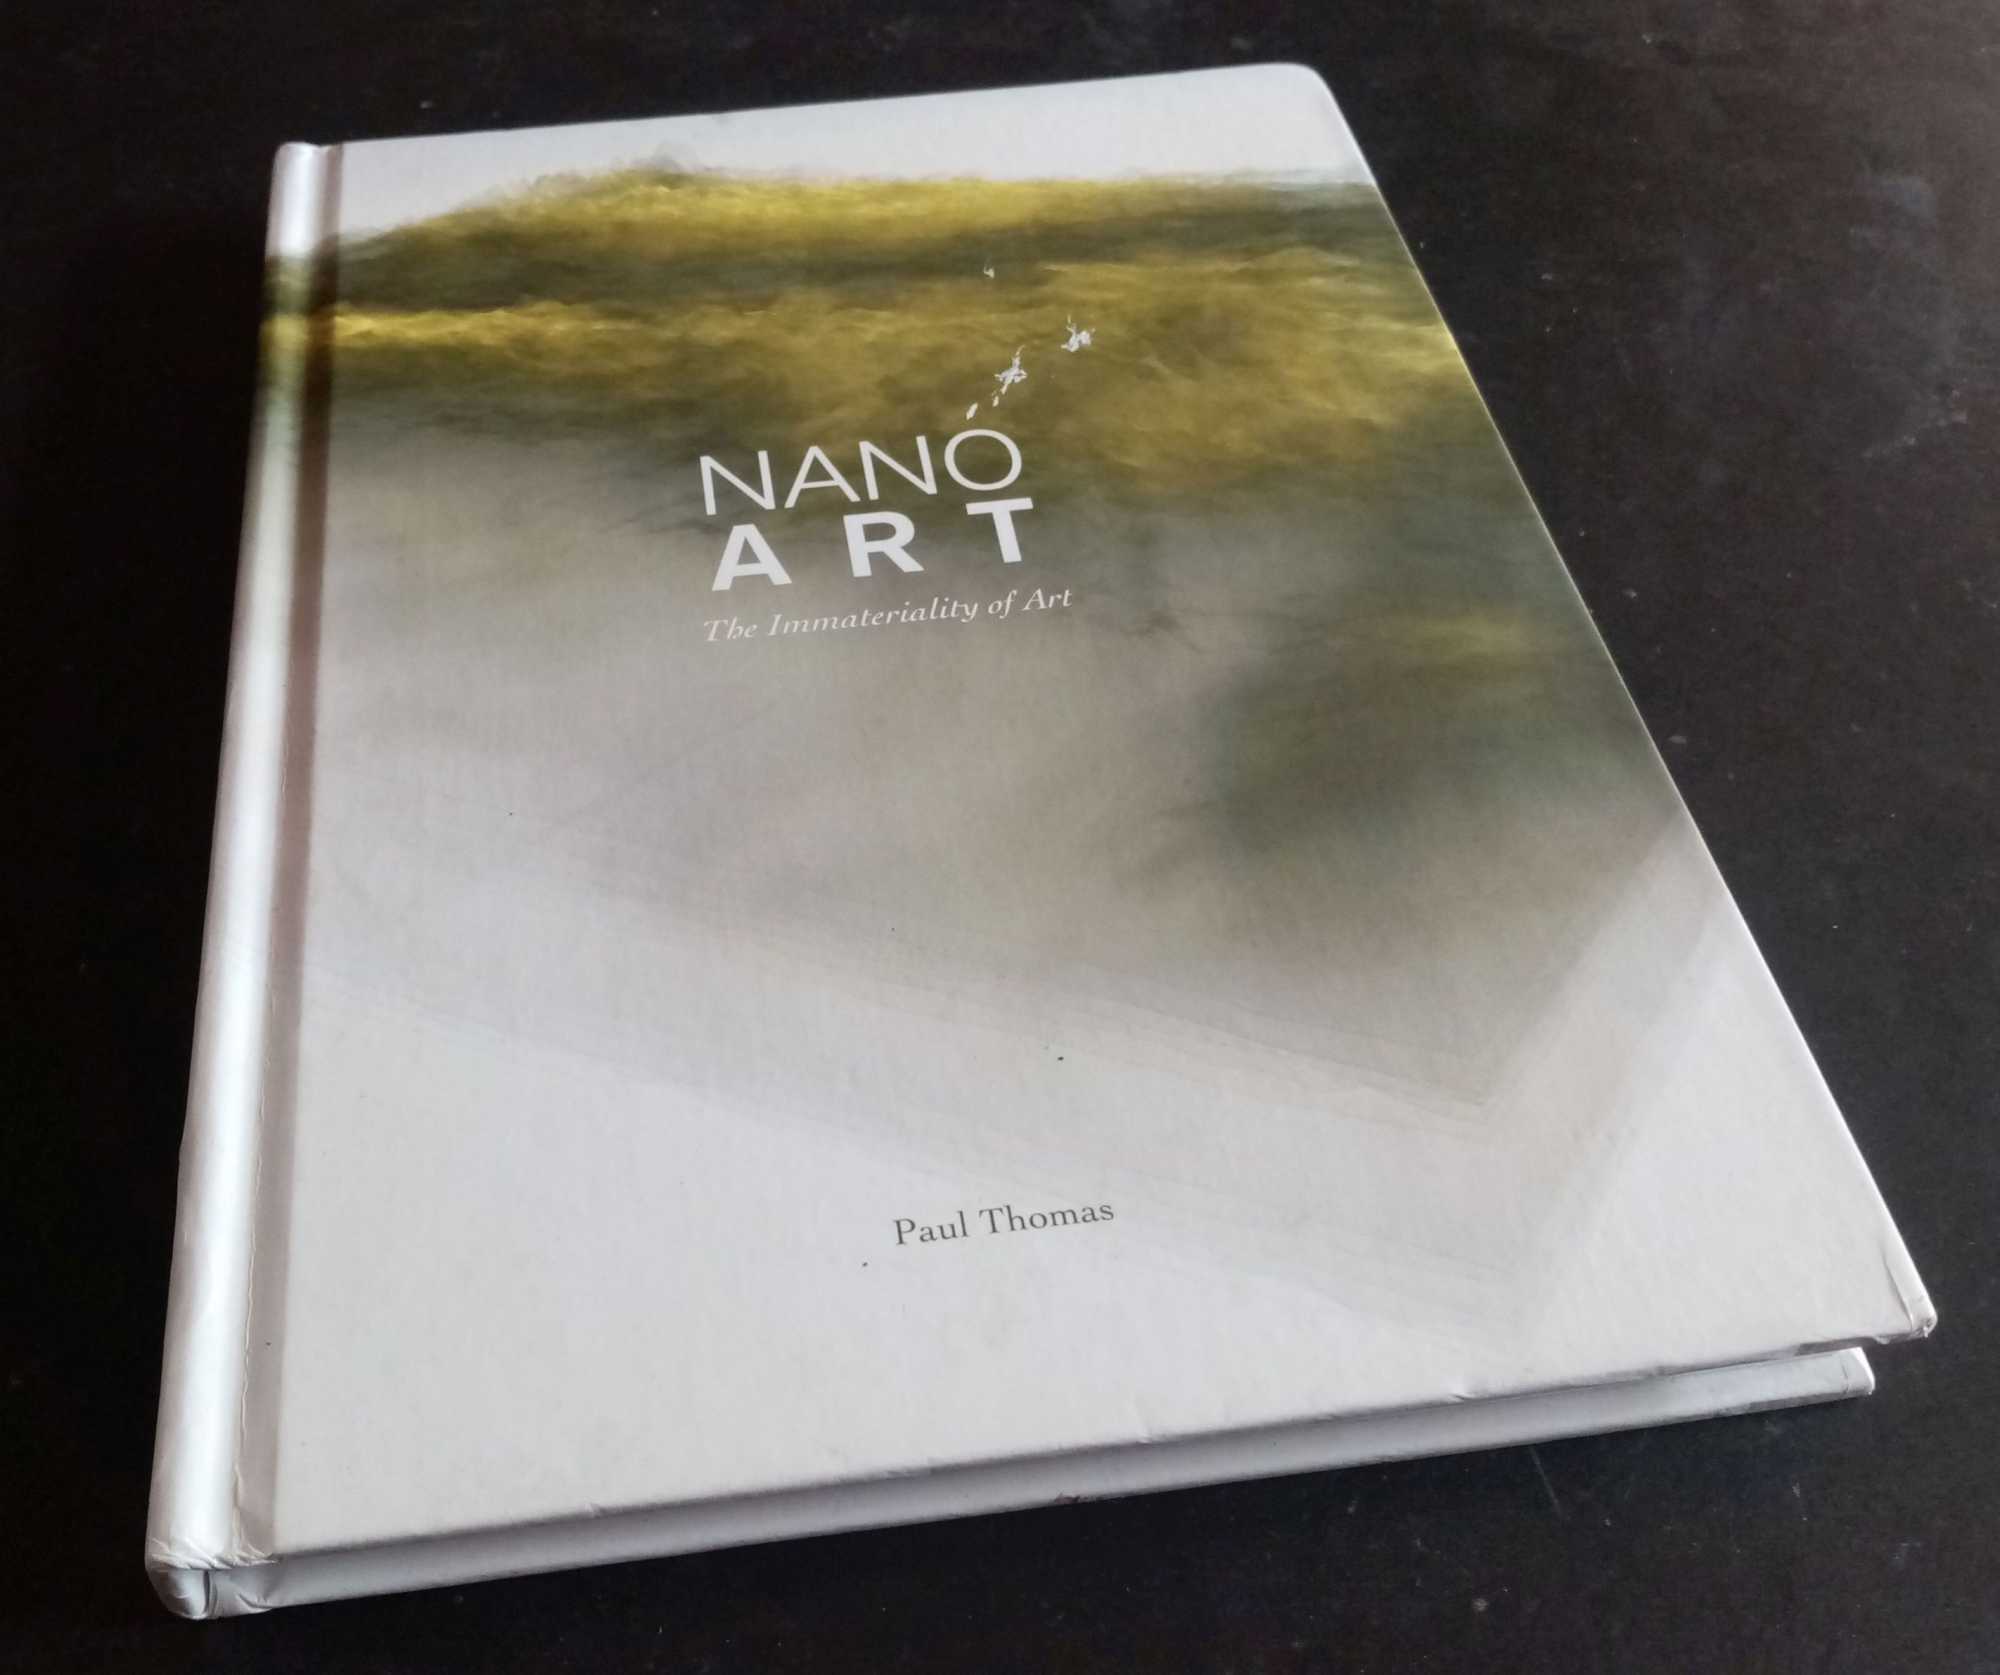 Paul Thomas - Nanoart: The Immateriality of Art